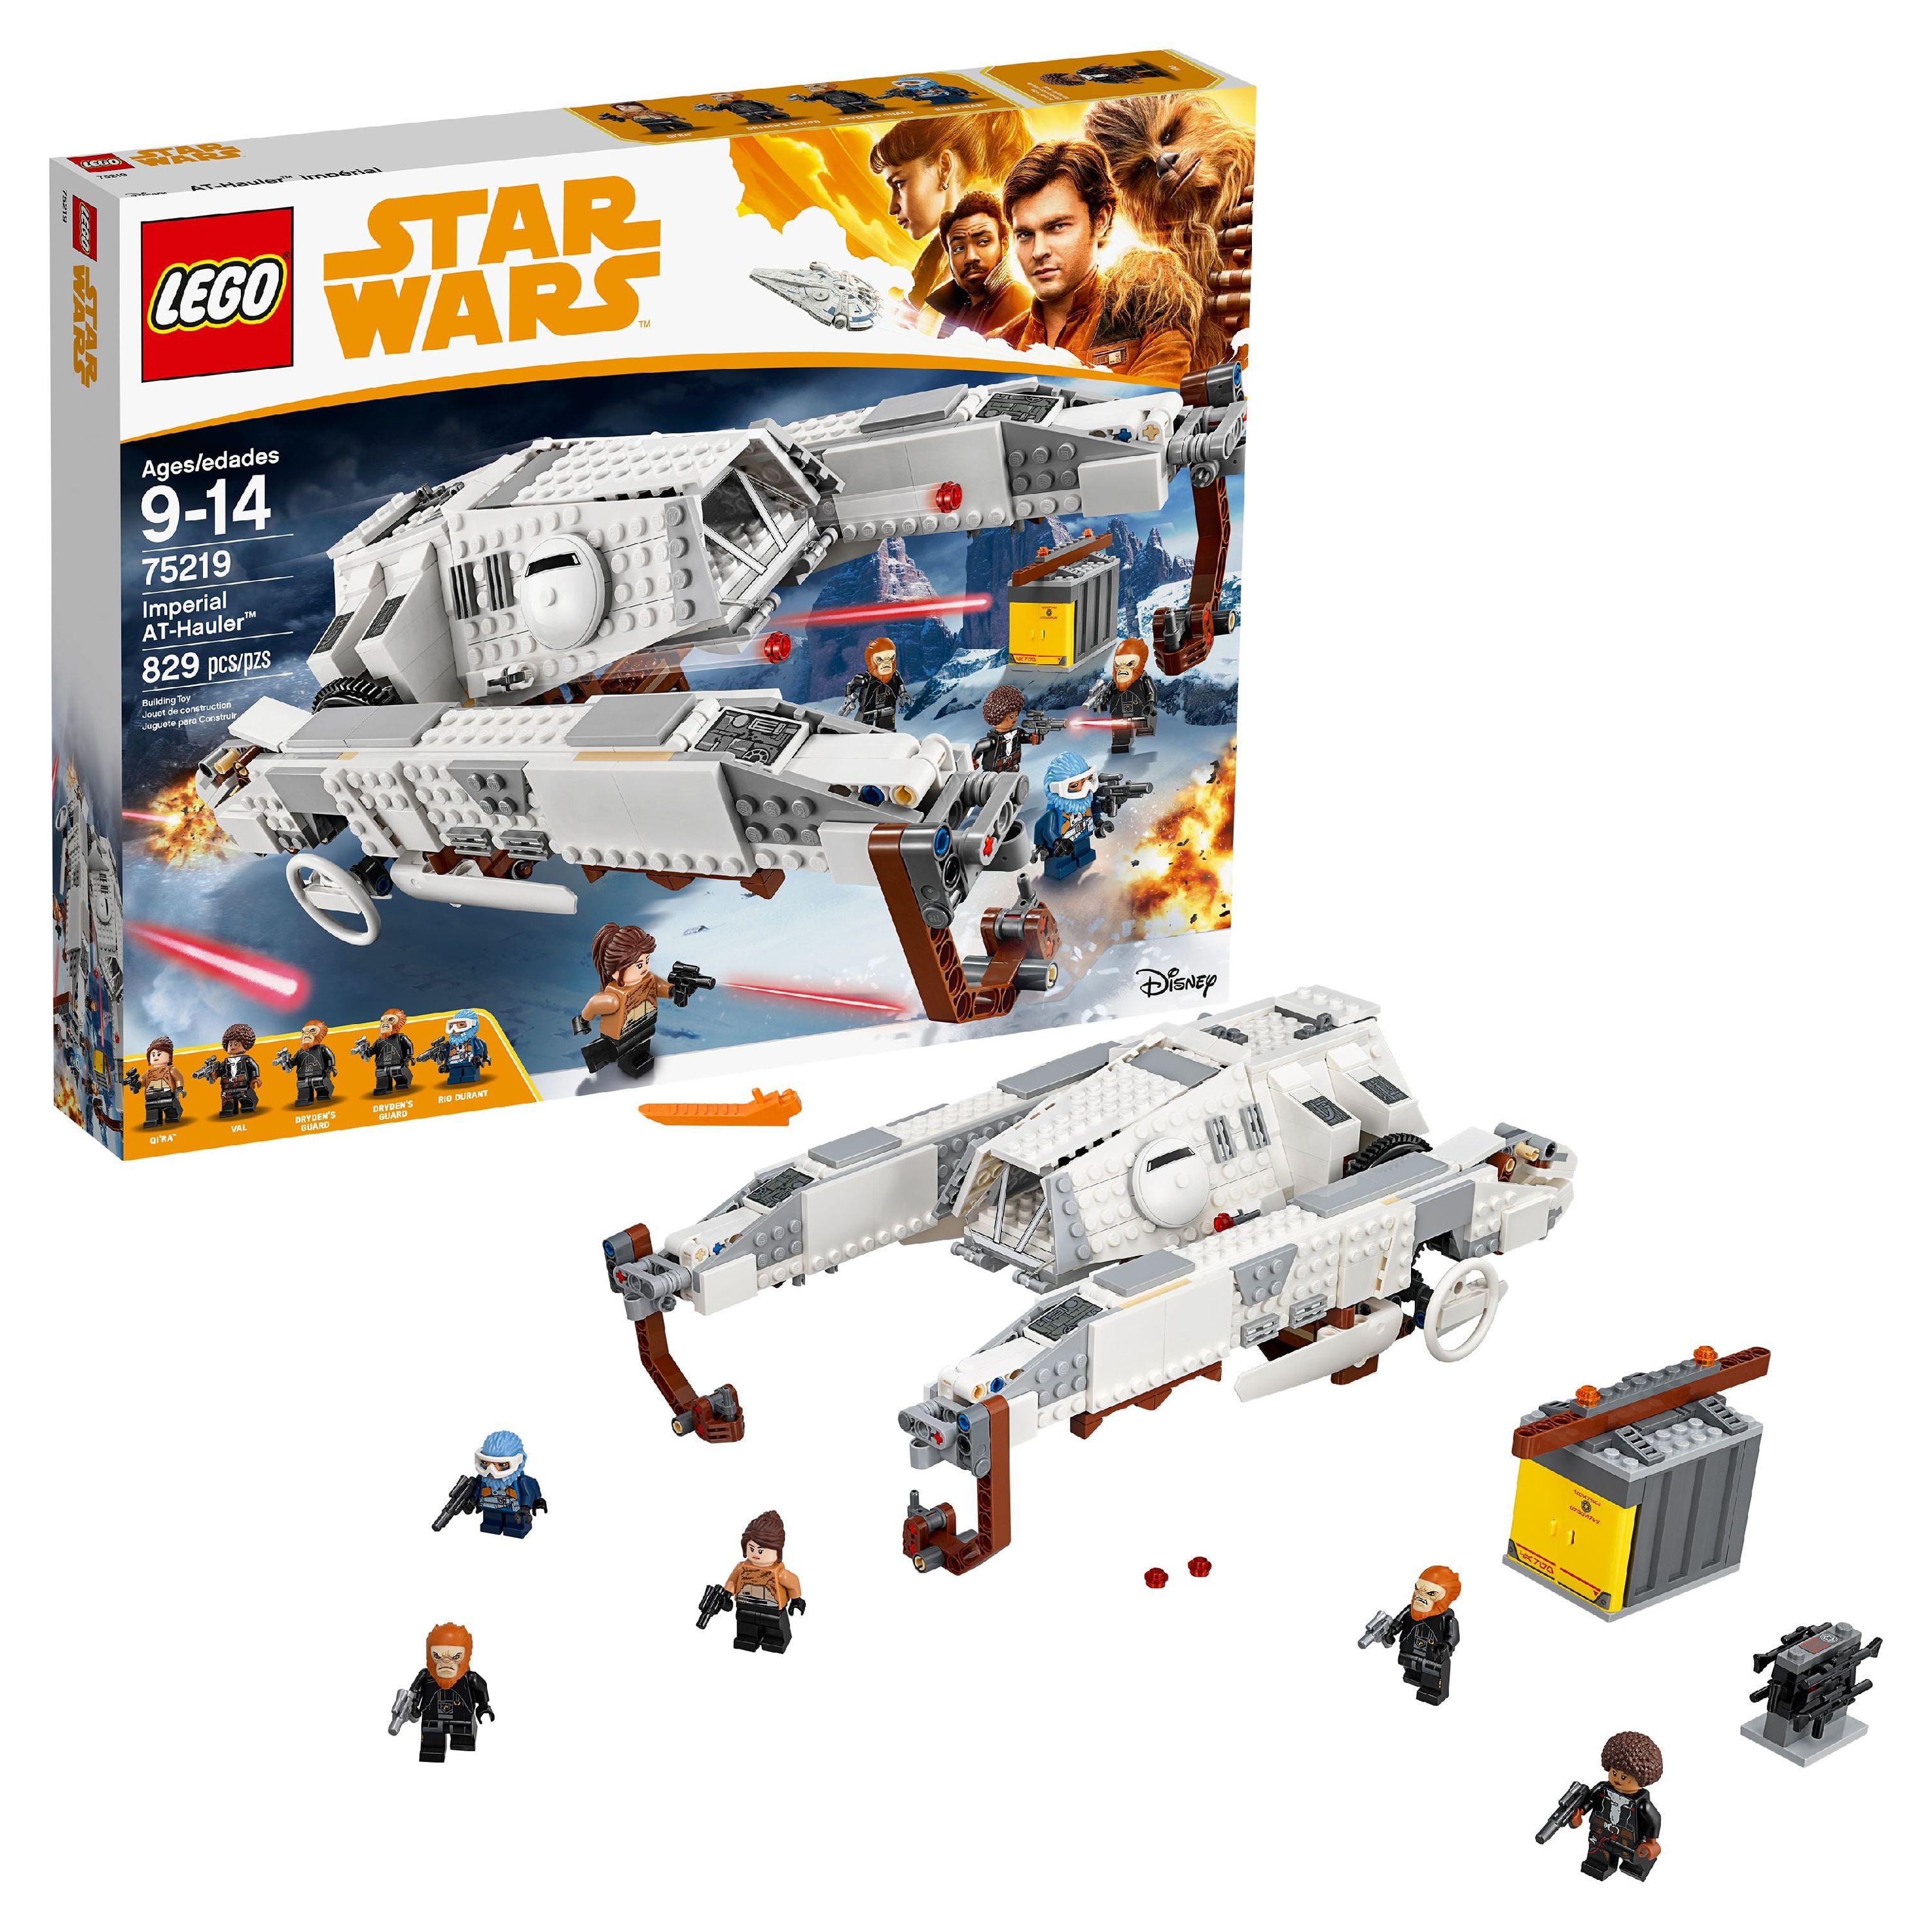 LEGO Star Wars TM Imperial AT-Hauler 75219 Building Set - image 1 of 7